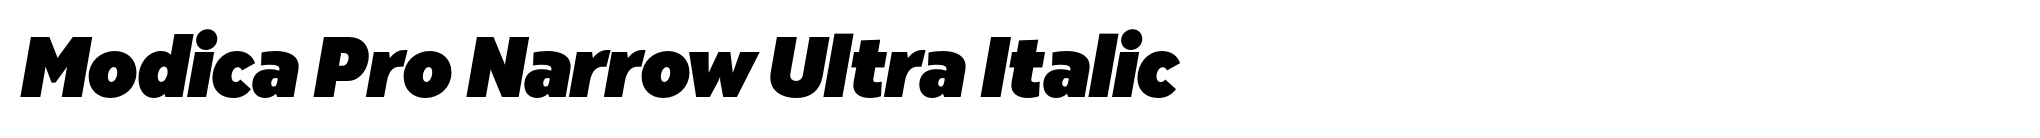 Modica Pro Narrow Ultra Italic image